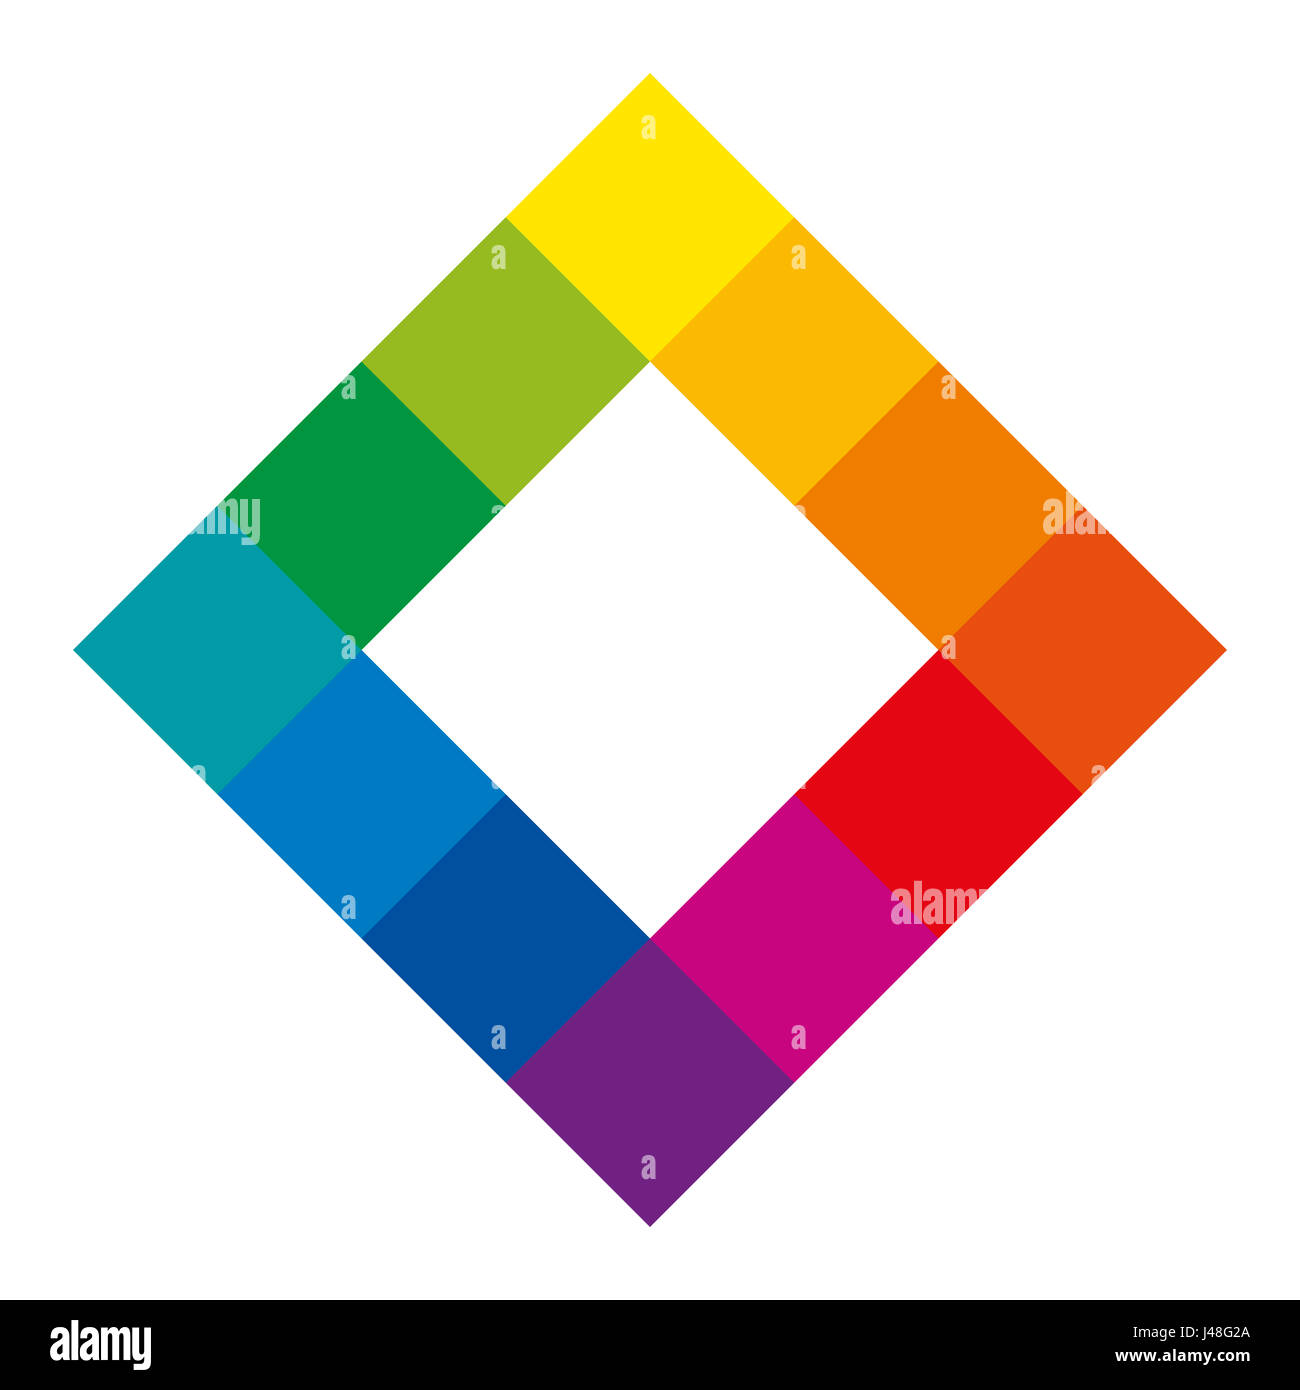 Douze teintes de couleur unique de la roue des couleurs en forme carrée montrant la relation entre l'enseignement primaire, secondaire et tertiaire de couleurs. Banque D'Images